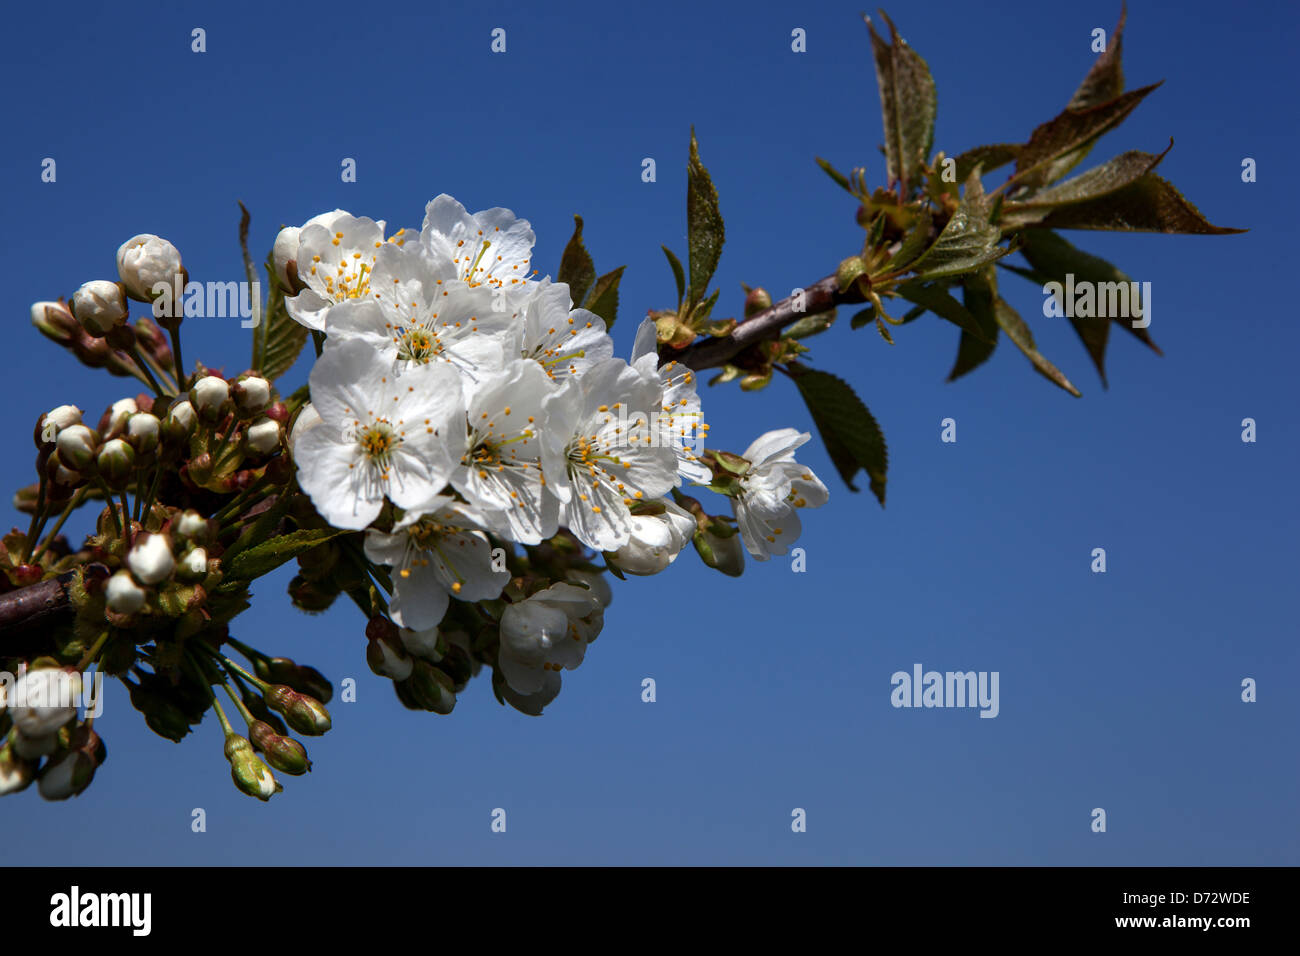 Nahaufnahme von Blüten auf einem Zweig im frühen Frühjahr Blühende Blume auf Baum Stockfoto